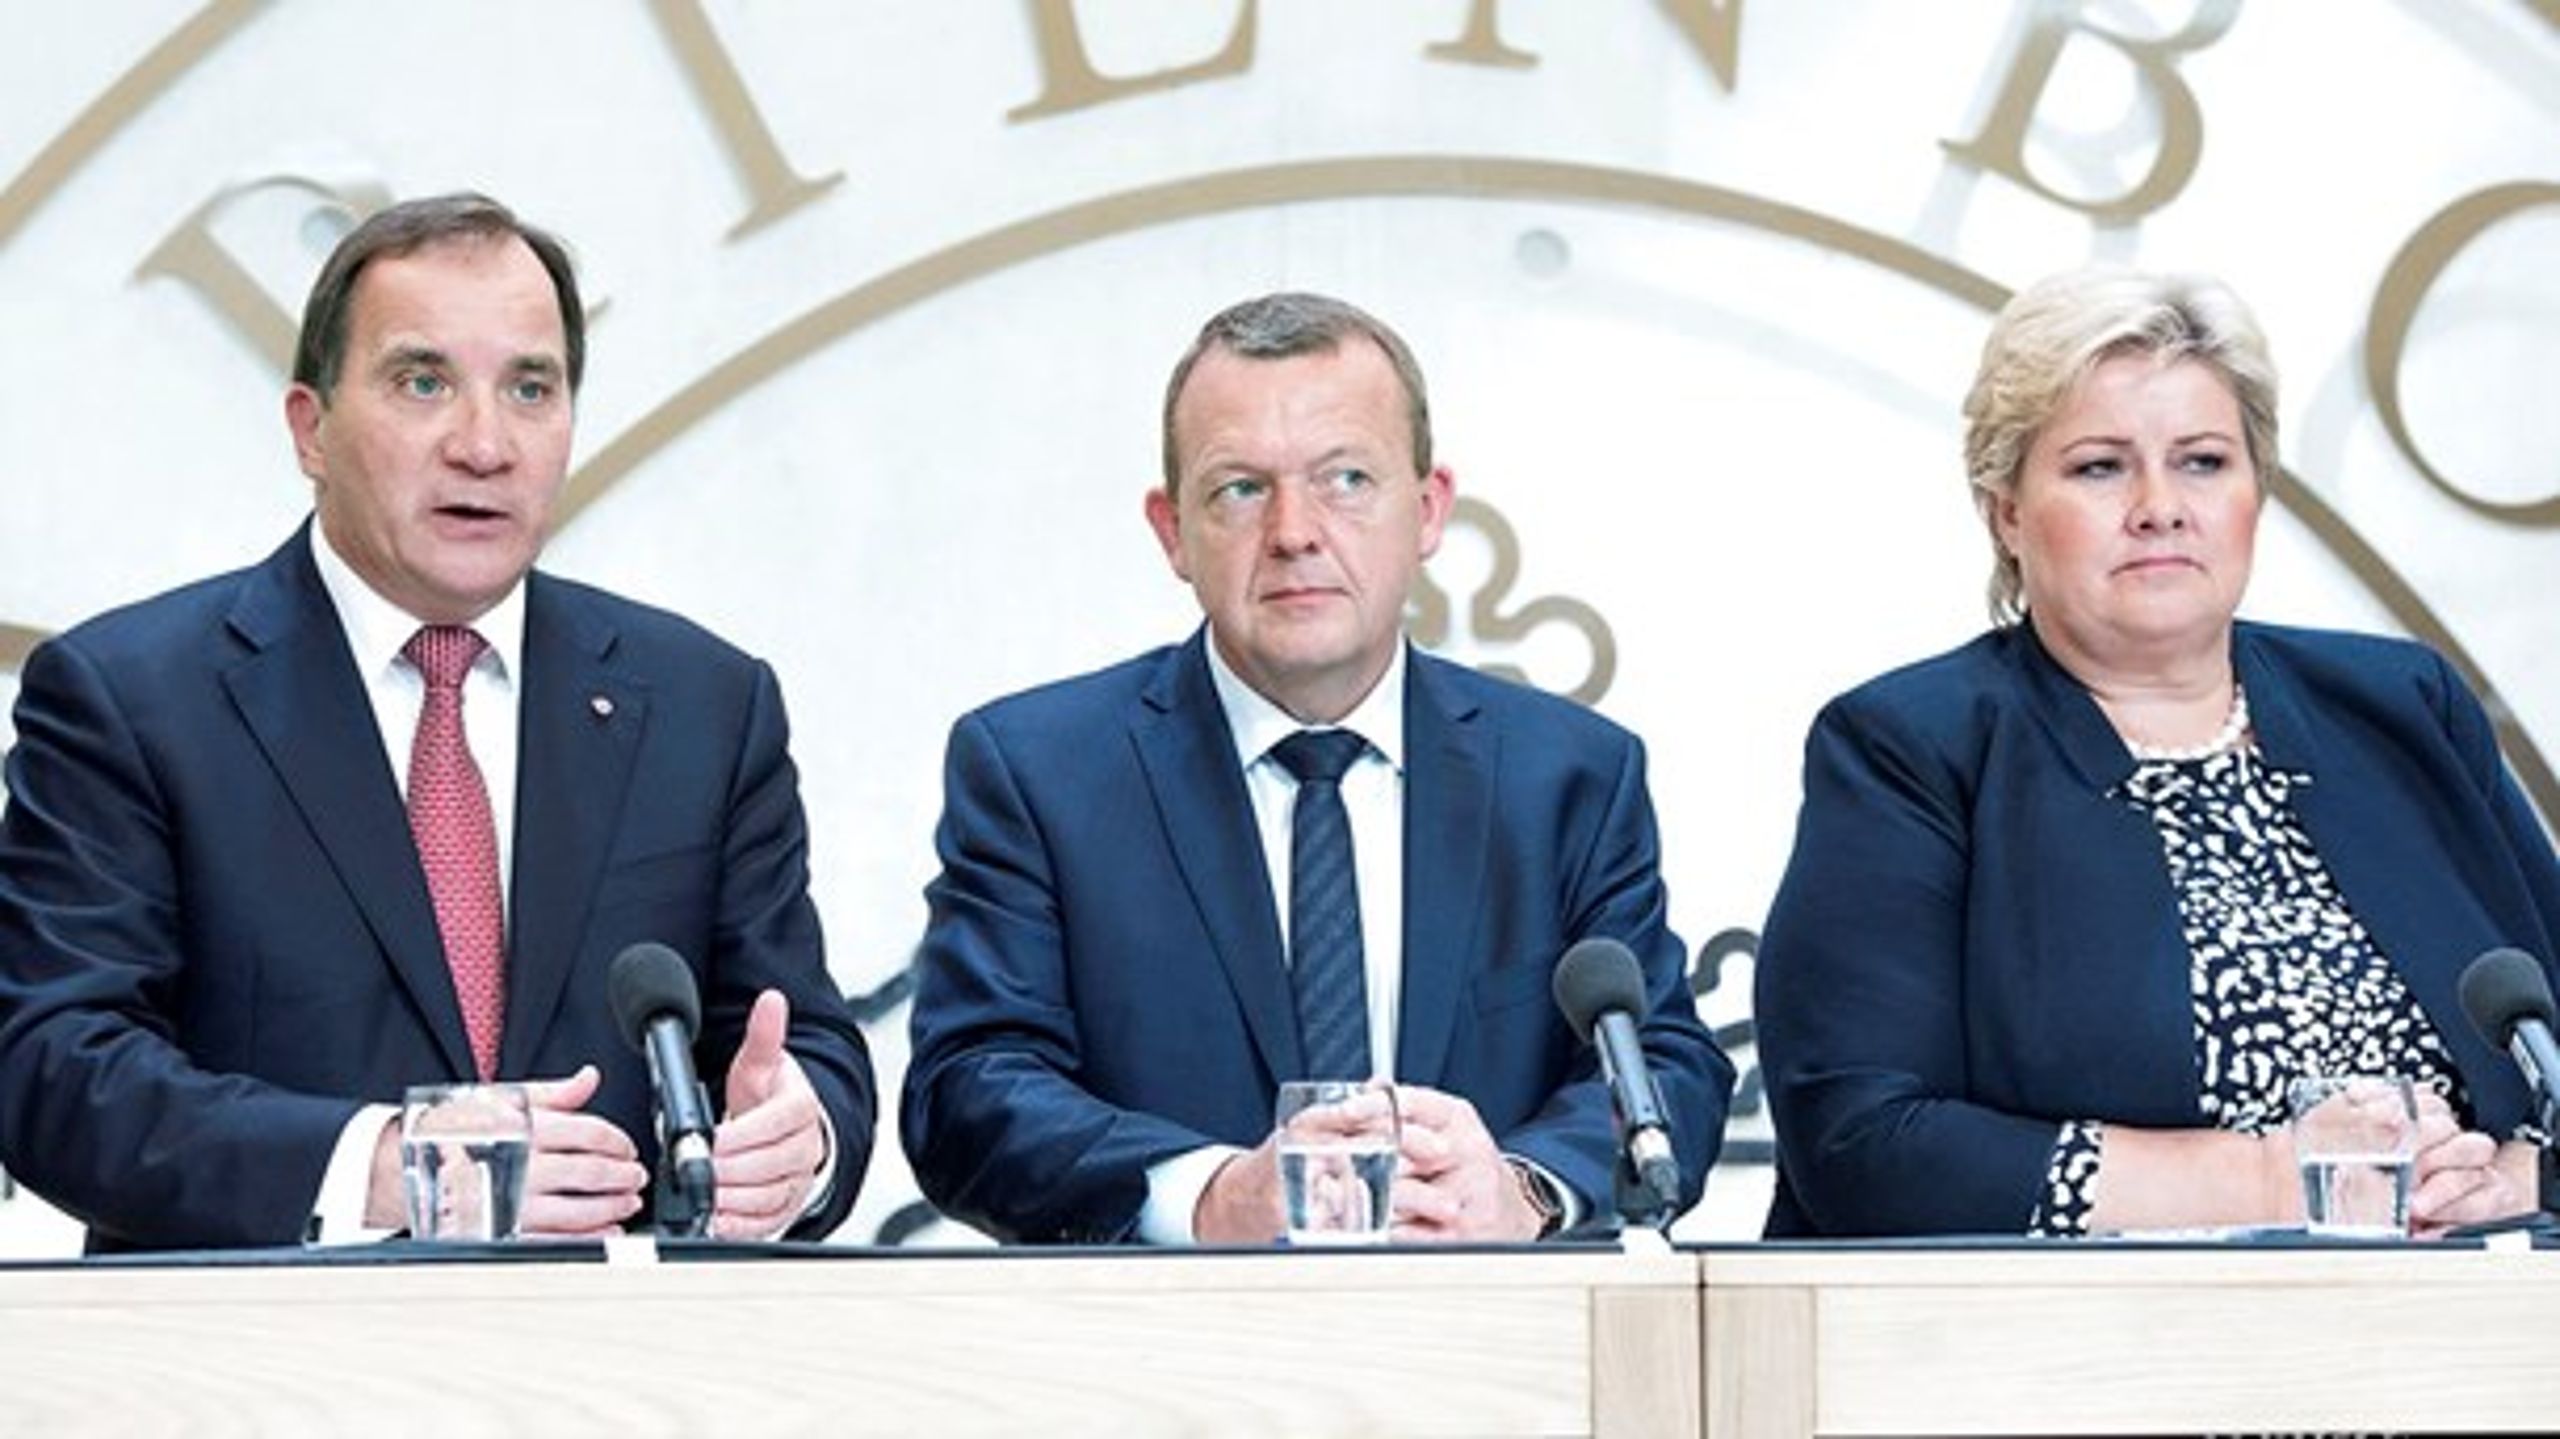 Sveriges statsminister Stefan Löfven og Norges statsminister Erna Solberg er blandt deltagerne, når Nordisk Råd holder sin 68. session i København i denne uge.